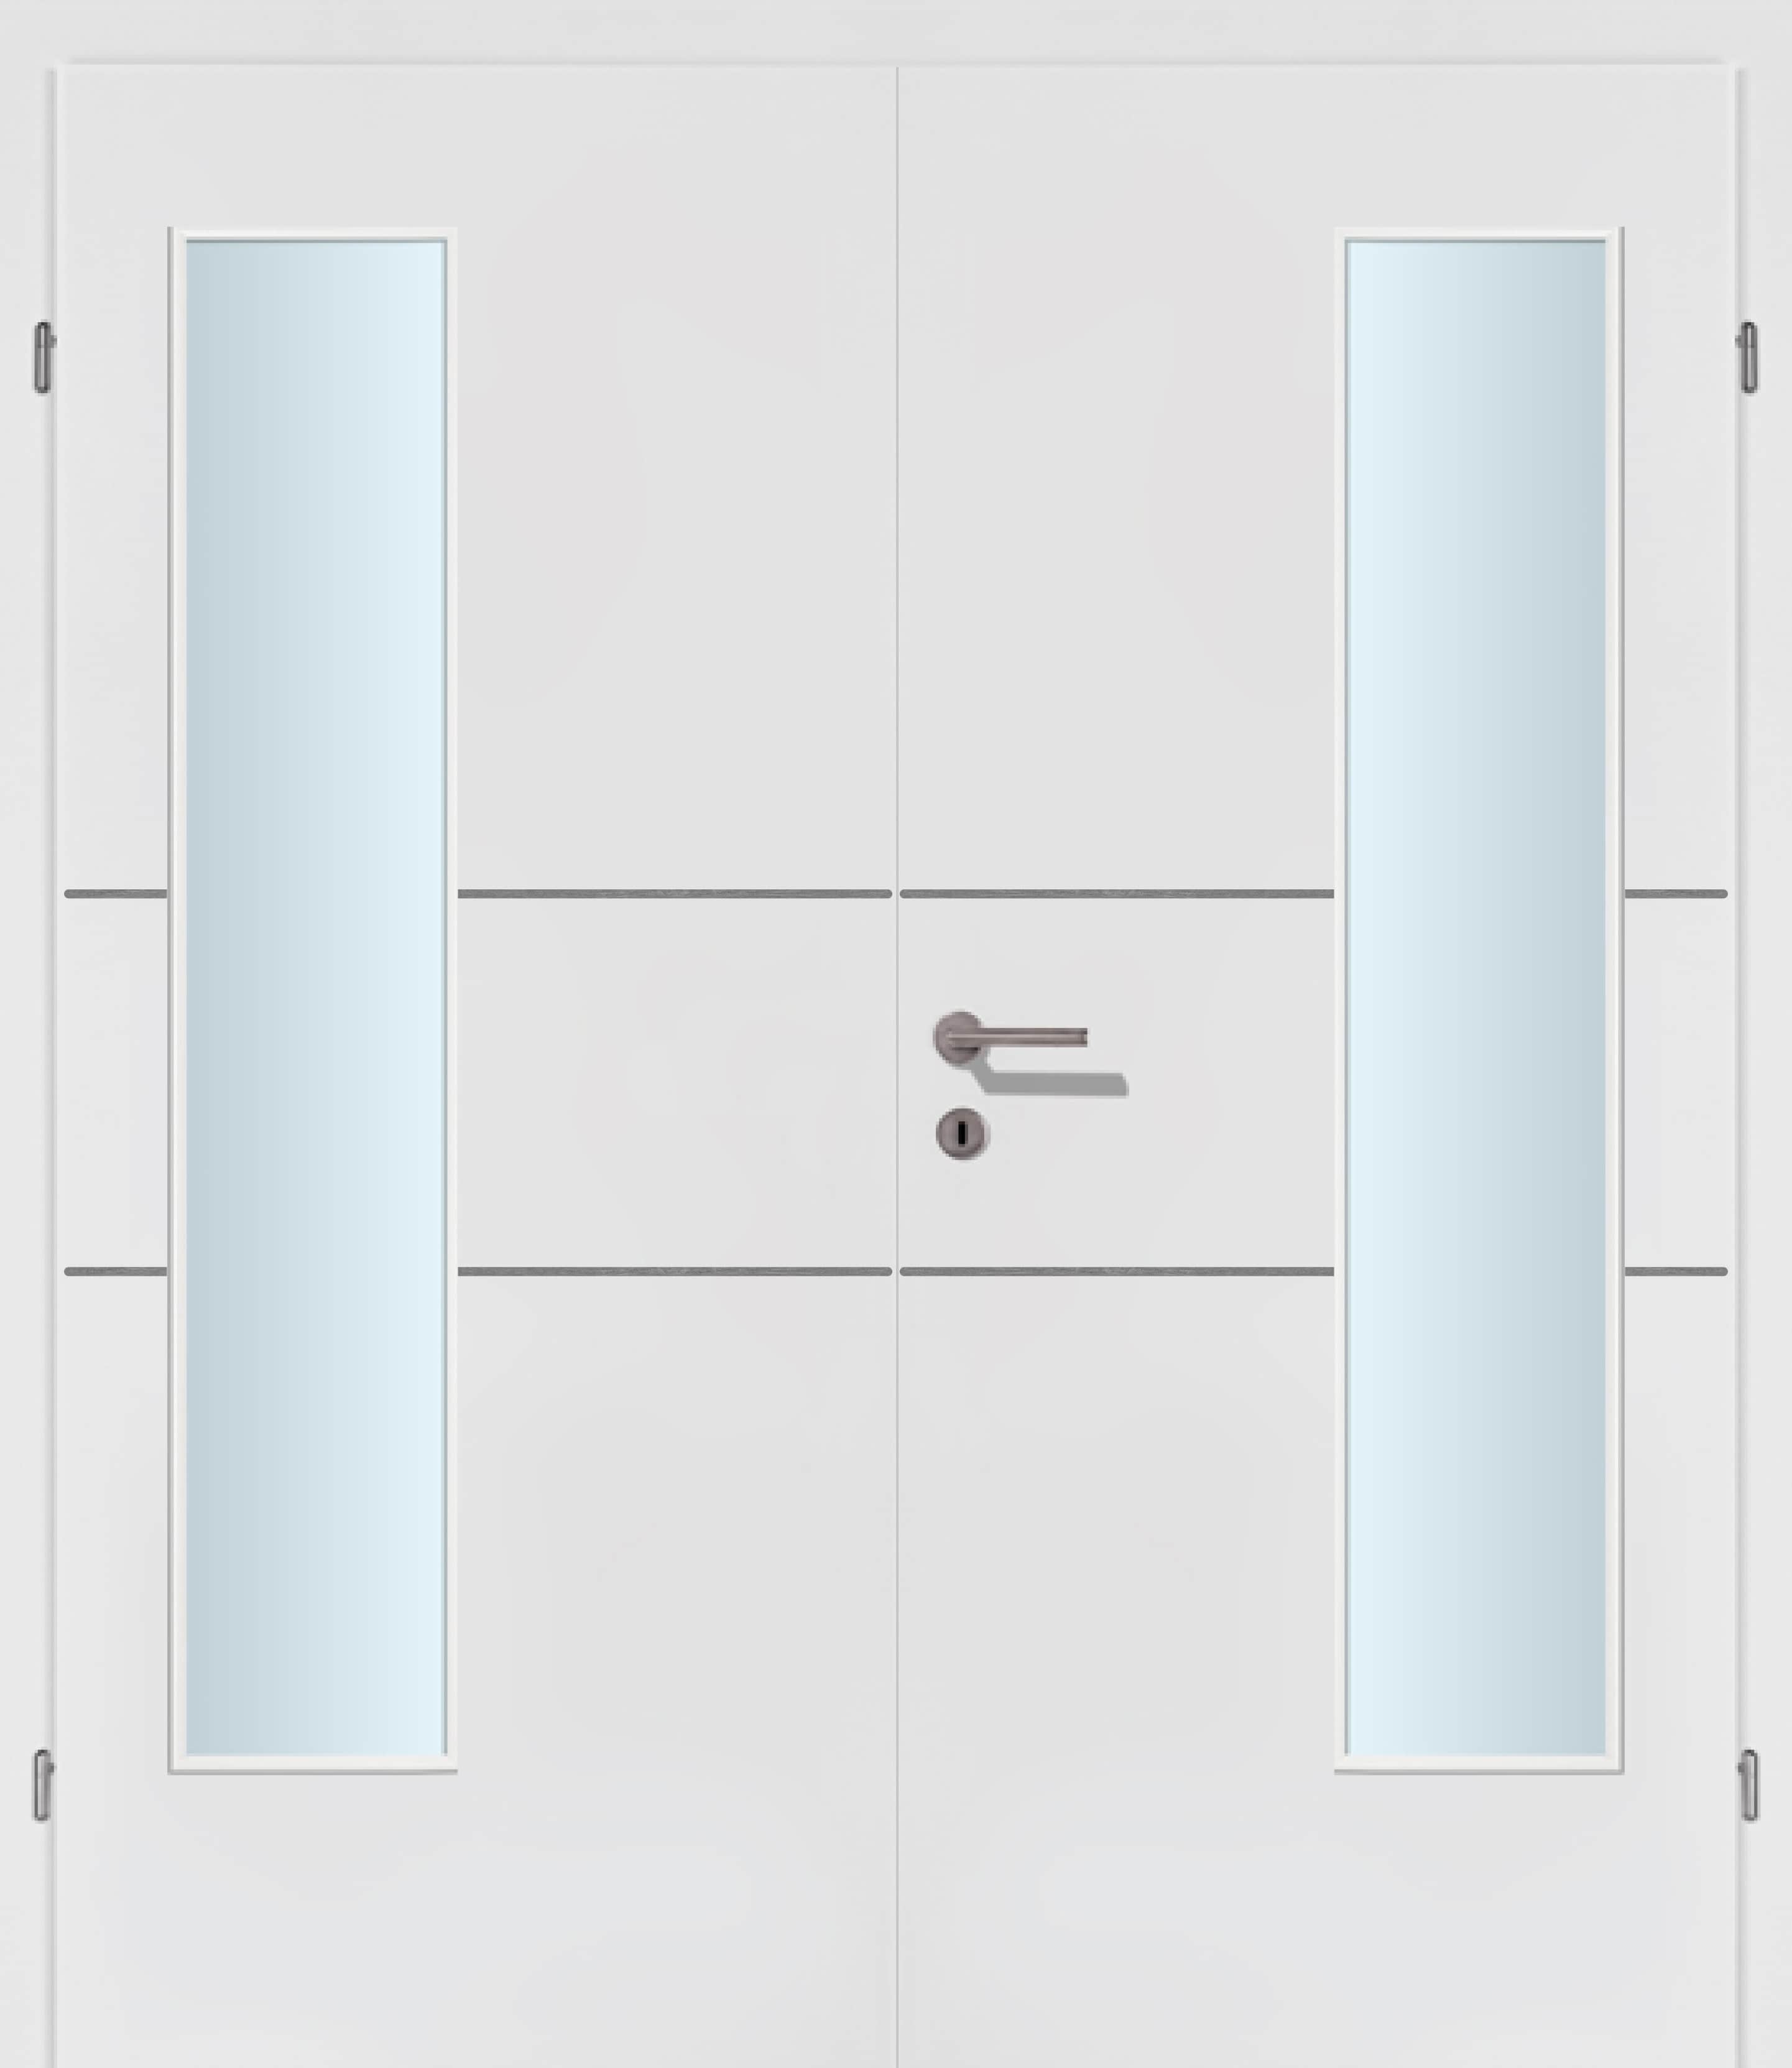 Selektion T41 Alu Effekt Lisenen weiss Innentür Inkl. Zarge (Türrahmen) Doppeltüre Inkl. Glaslichte EN Bandseitig